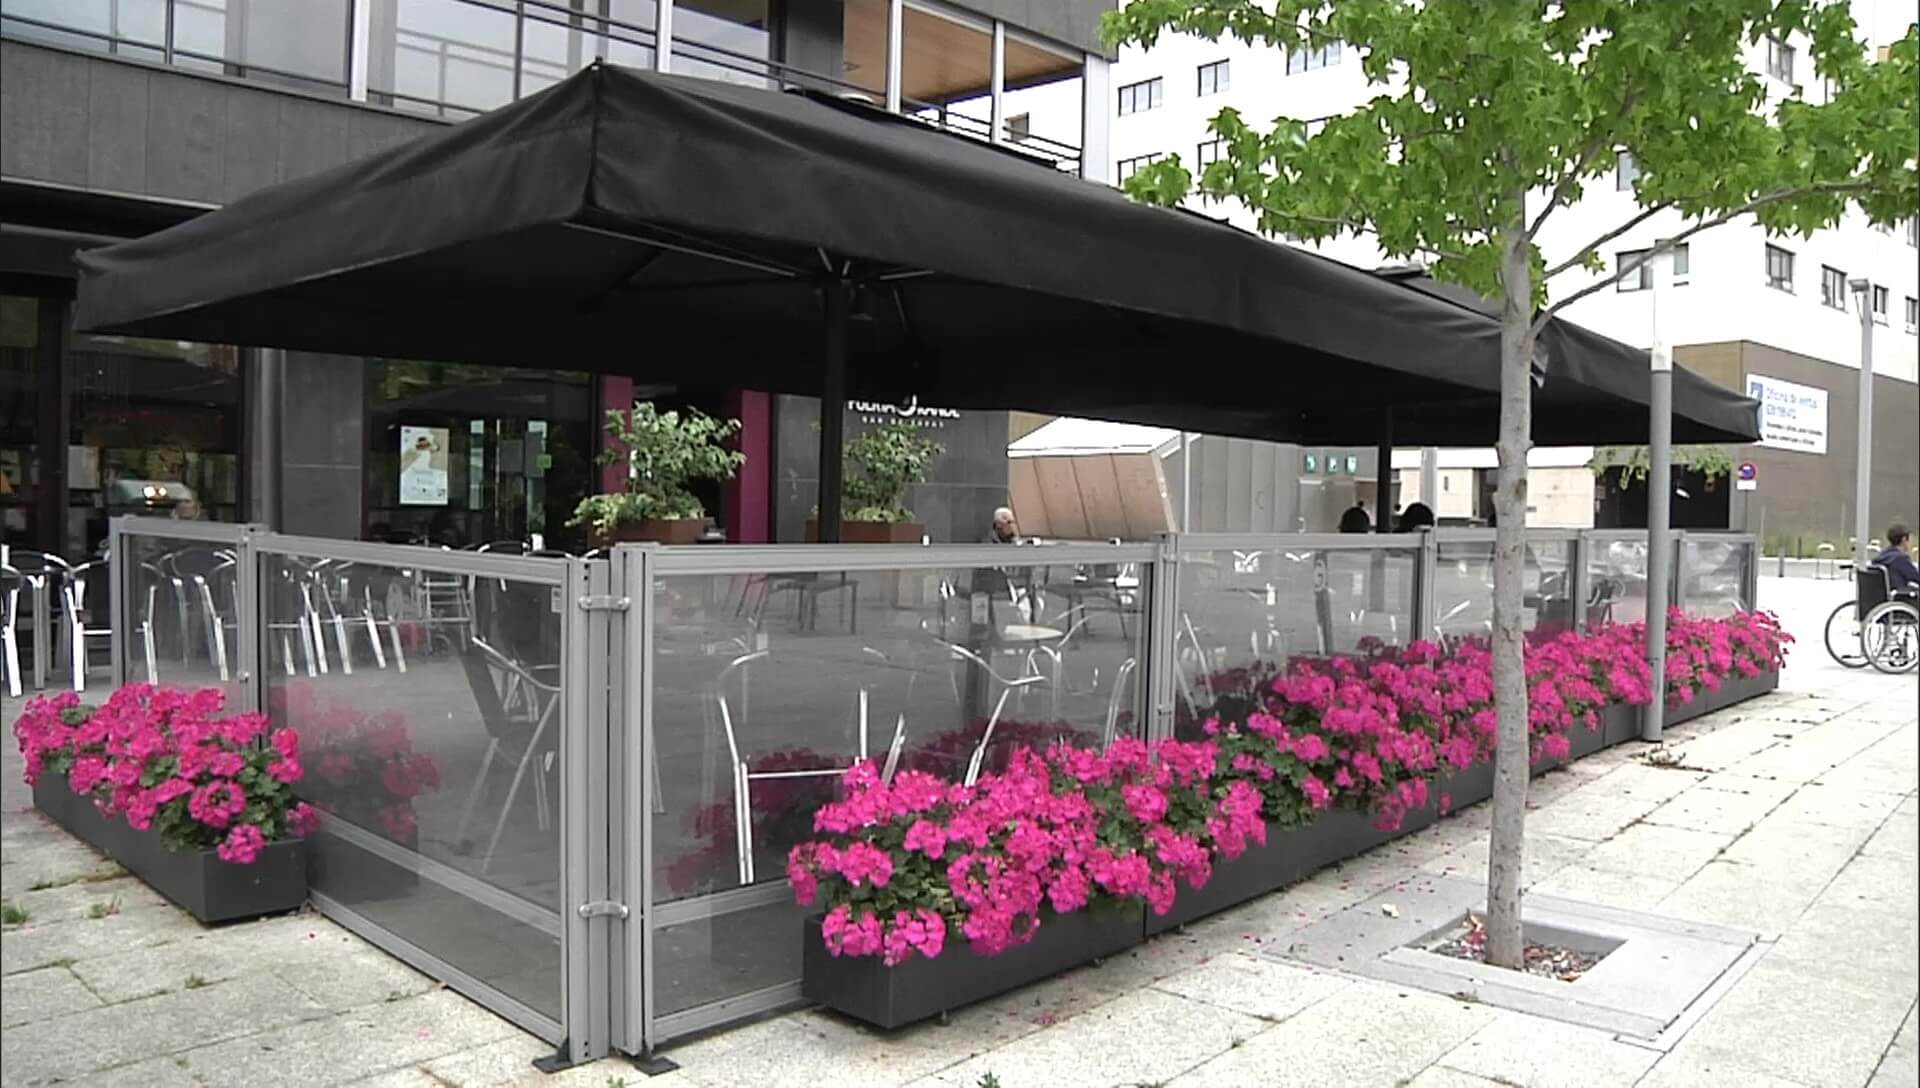  Moderno y céntrico bar restaurante de Vitoria-Gasteiz con terraza y cocina non-stop con productos de temporada y mercado.        